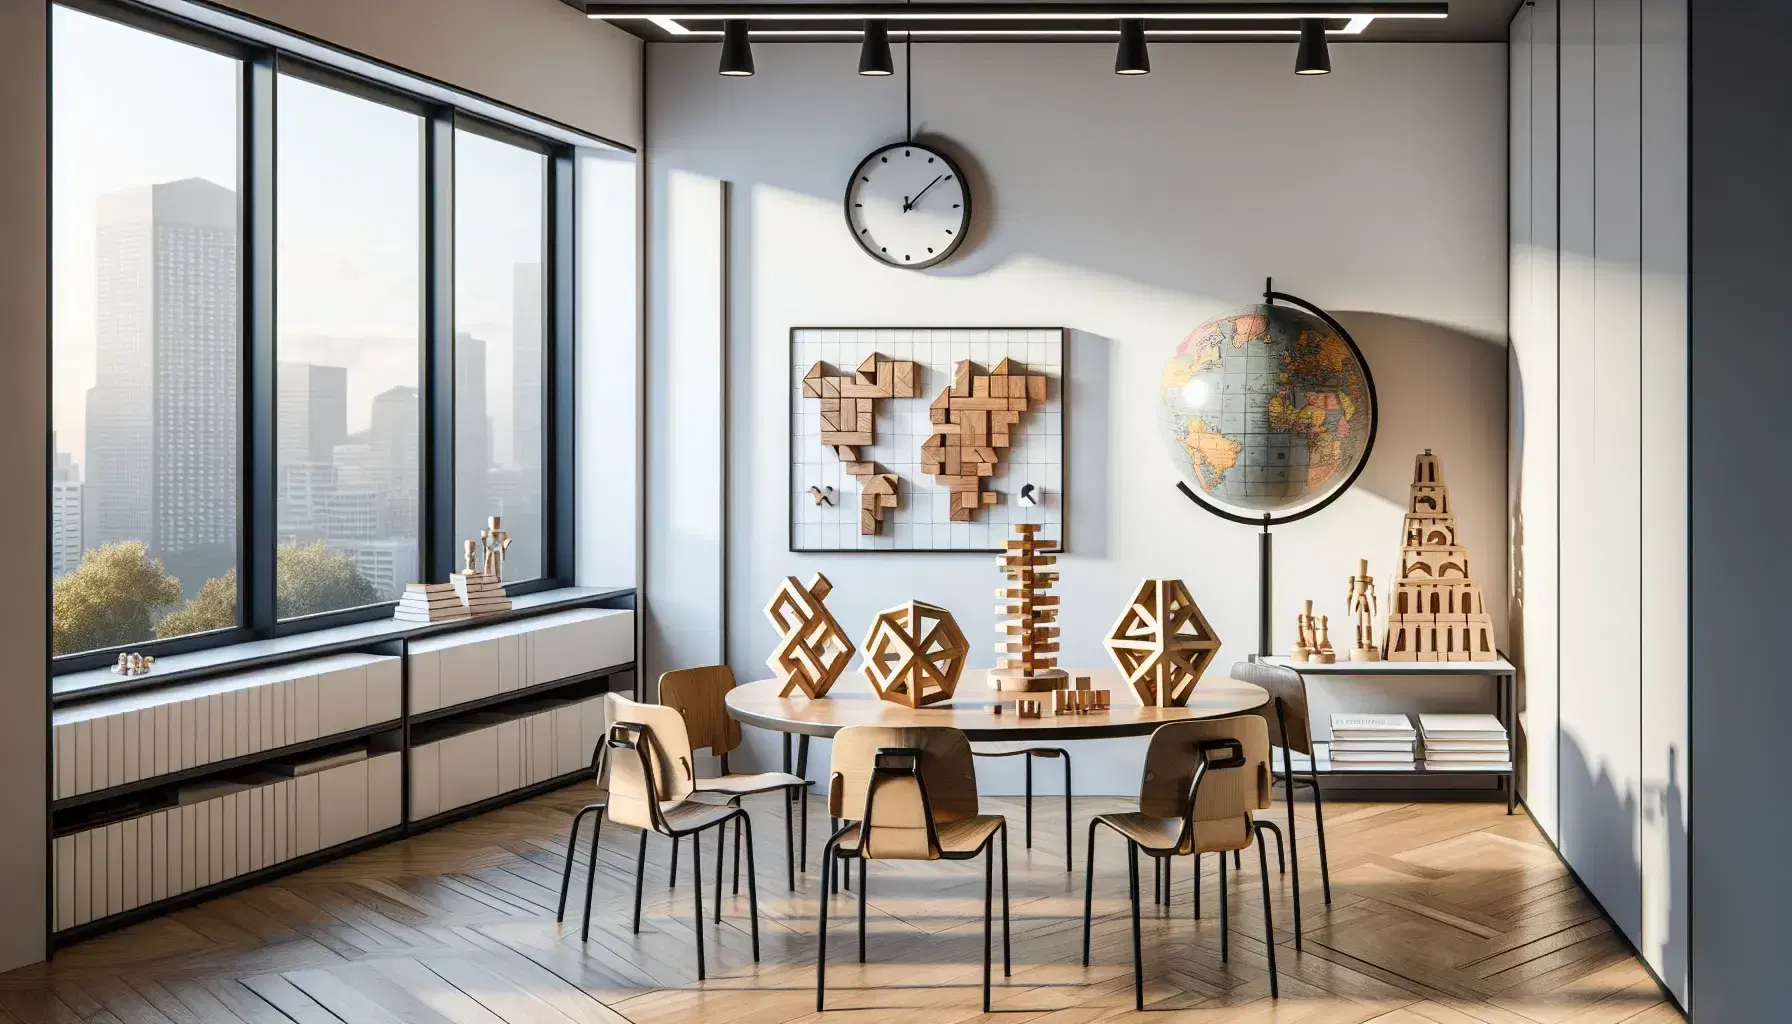 Aula moderna y luminosa con mesa redonda, sillas, rompecabezas de madera, juegos de lógica en estante, globo y reloj en pared, pizarra blanca y suelo de parquet.